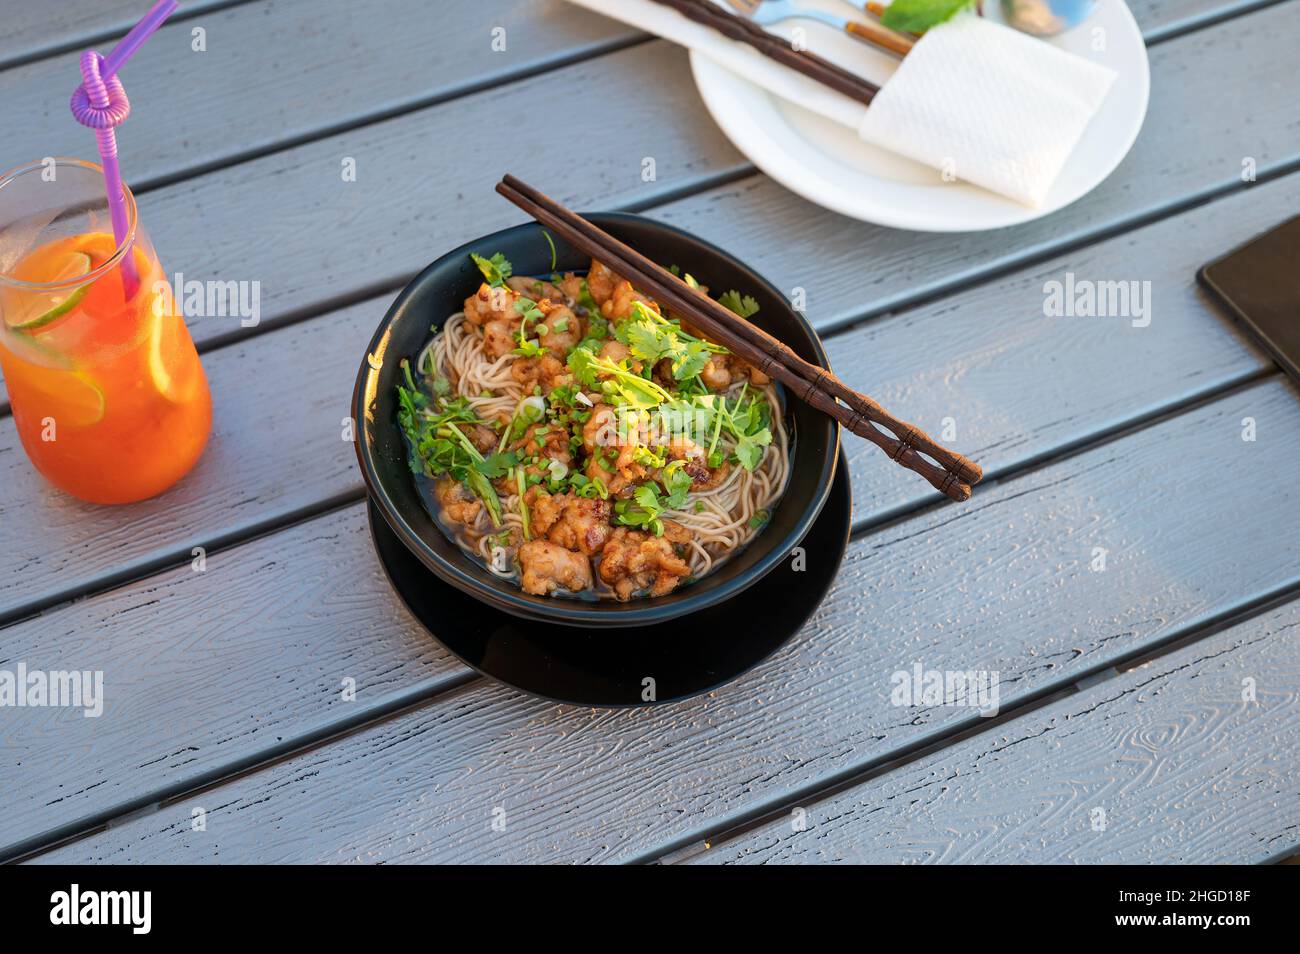 Tagliatelle per zuppa asiatica con pollo e verdure servite su un tavolo. Ristorante cinese con spazio per fotocopie Foto Stock